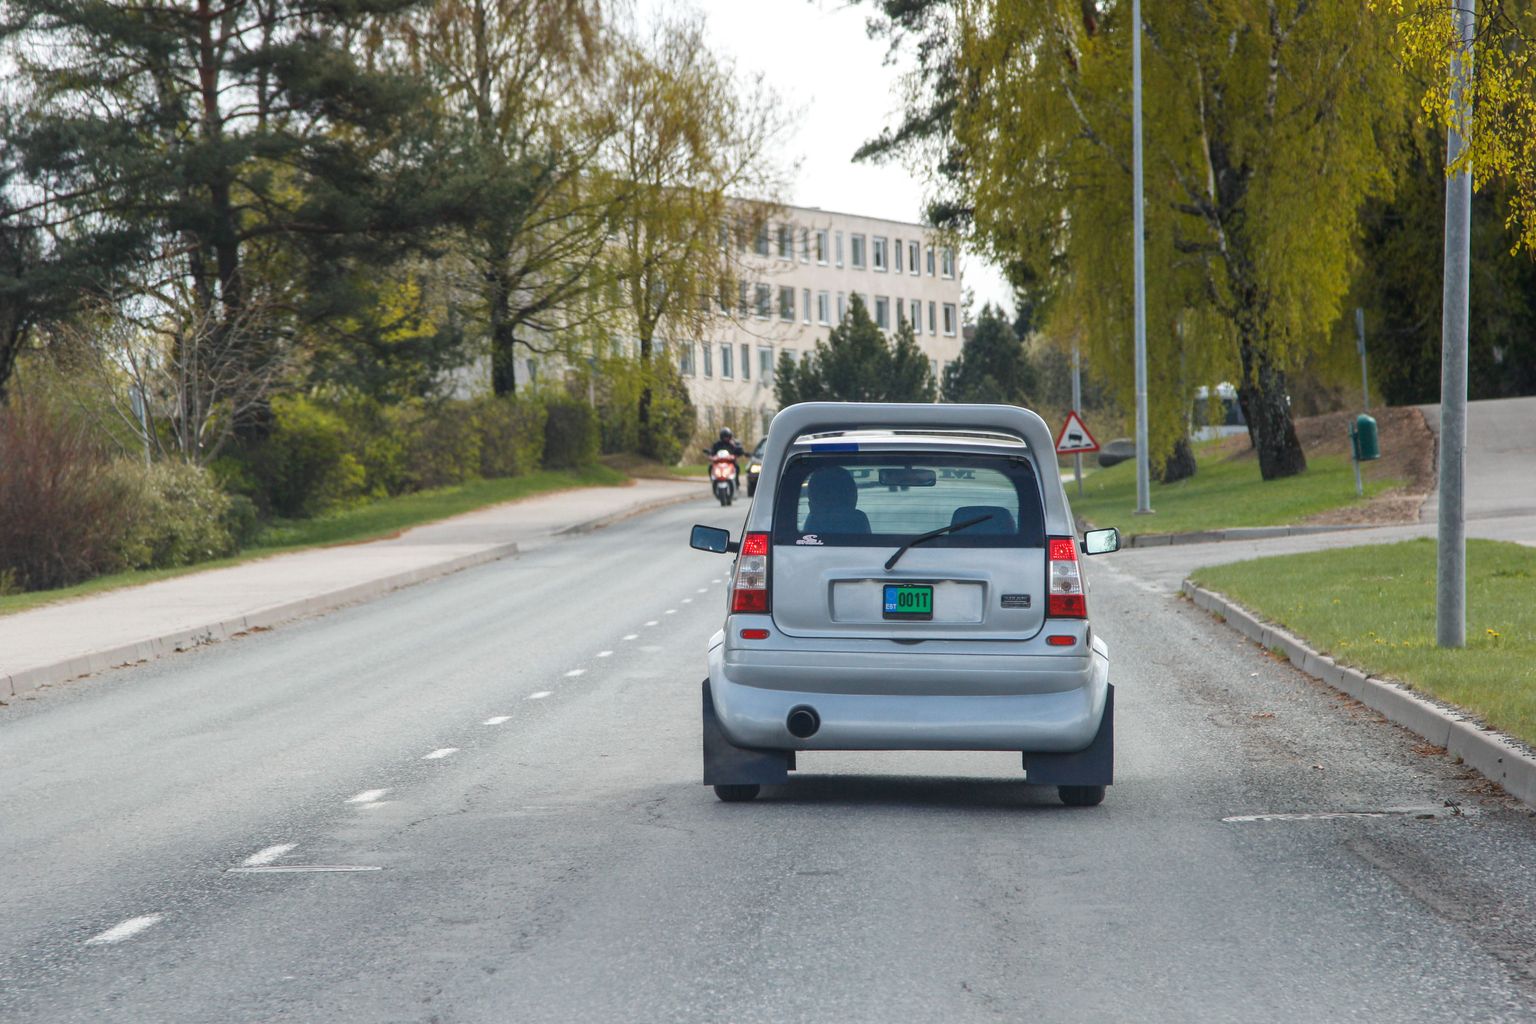 Mopeedautosid on Eesti tänavatel aina enam, kuid need häirivad aeglase sõidukiiruse pärast teisi liiklejaid.